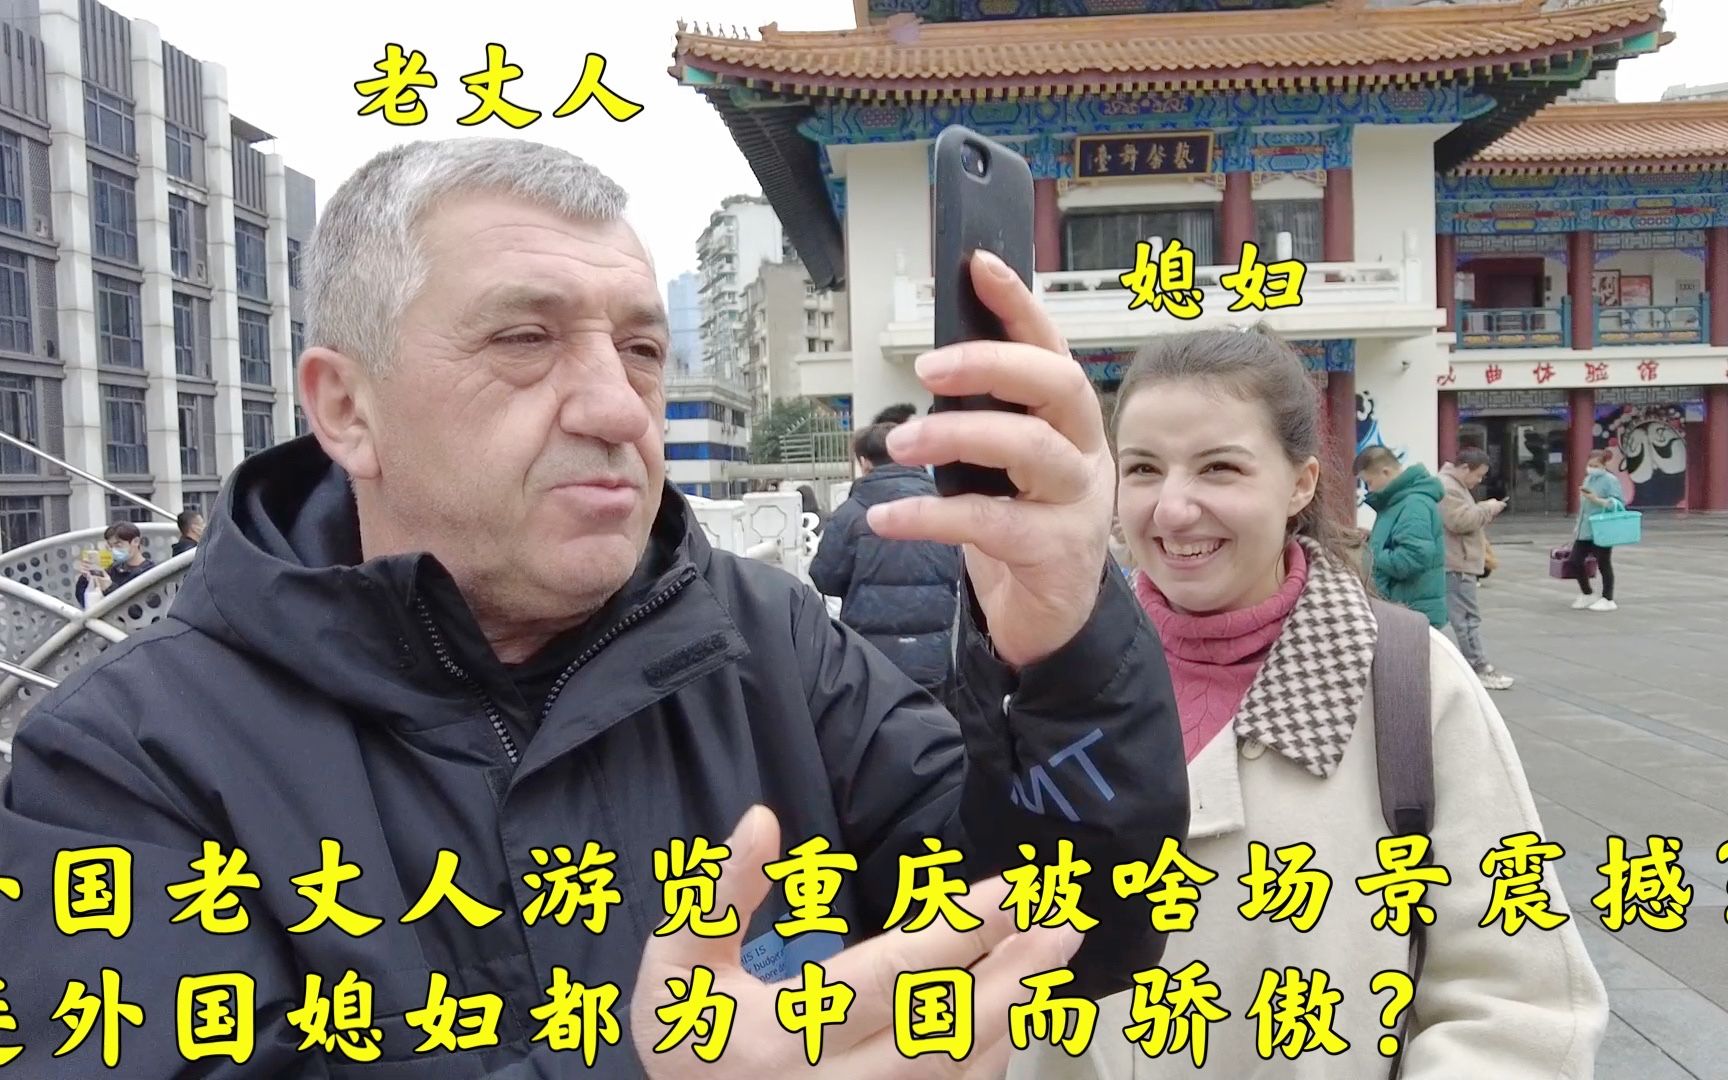 外国媳妇和同学吃四川火锅,听媳妇讲在中国的生活,也想嫁中国人?-汪汪在亚美尼亚-汪汪在亚美尼亚-哔哩哔哩视频